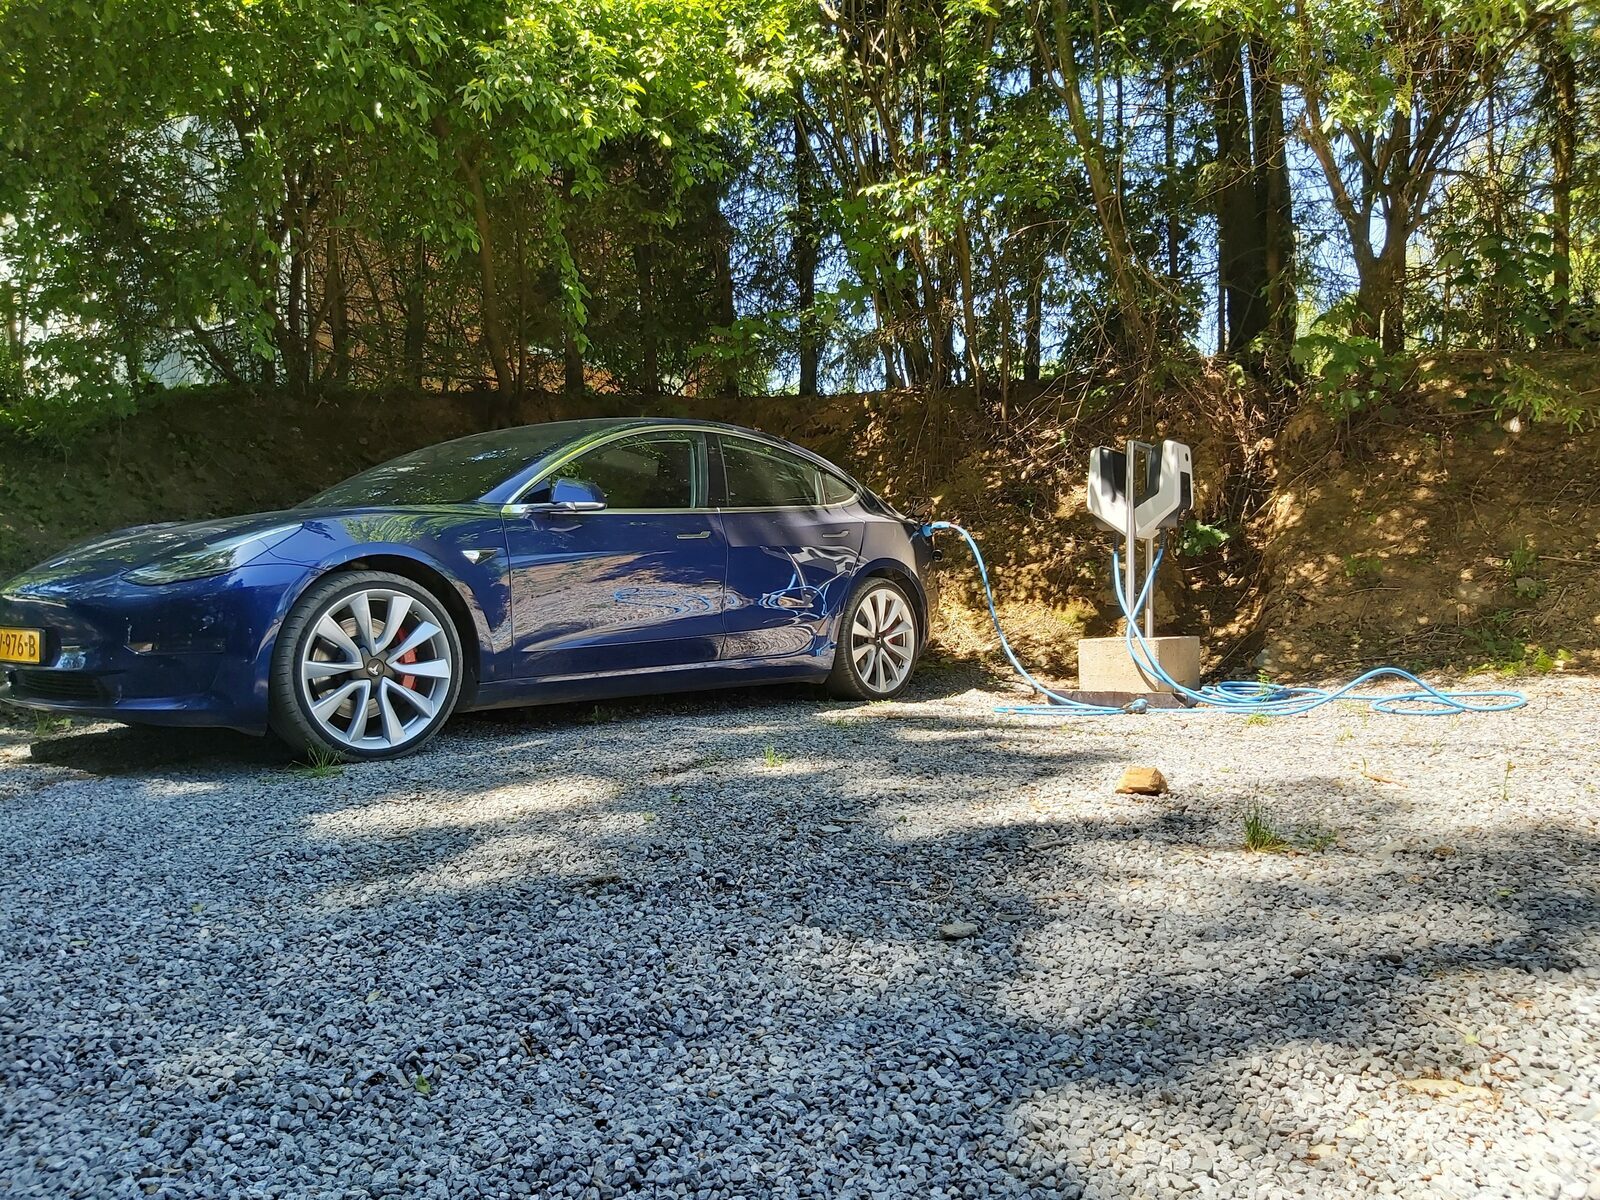 Point de charge pour les voitures électriques Petite Suisse
